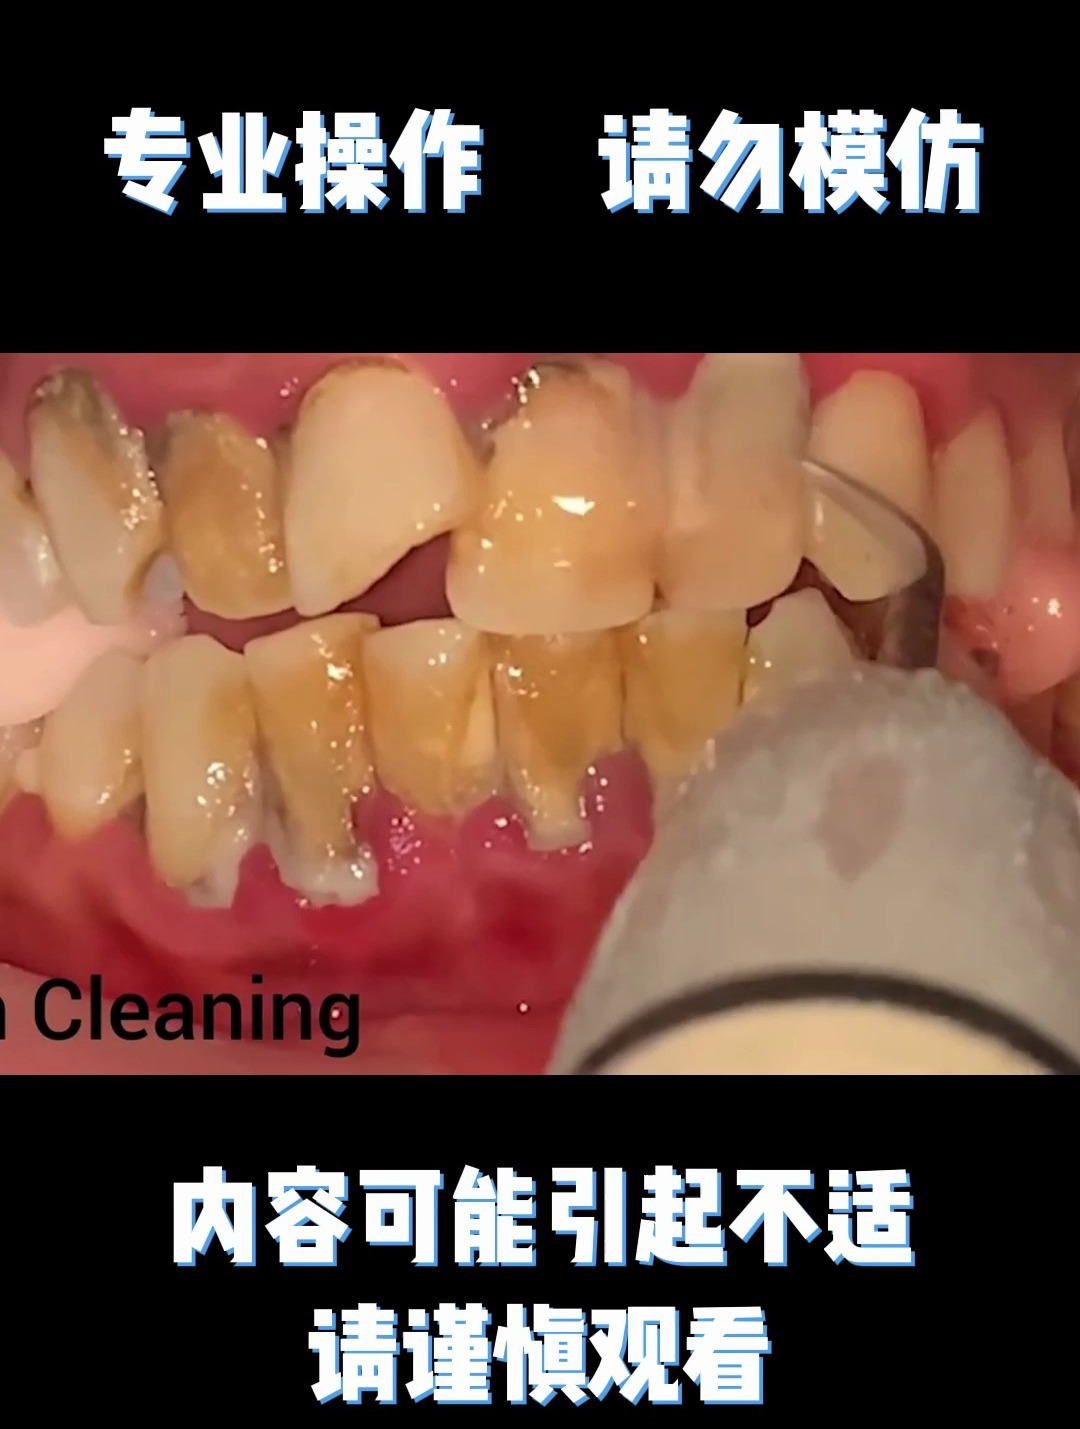 不好好刷牙的后果,看着洗牙过程都疼,要注意口腔清洁